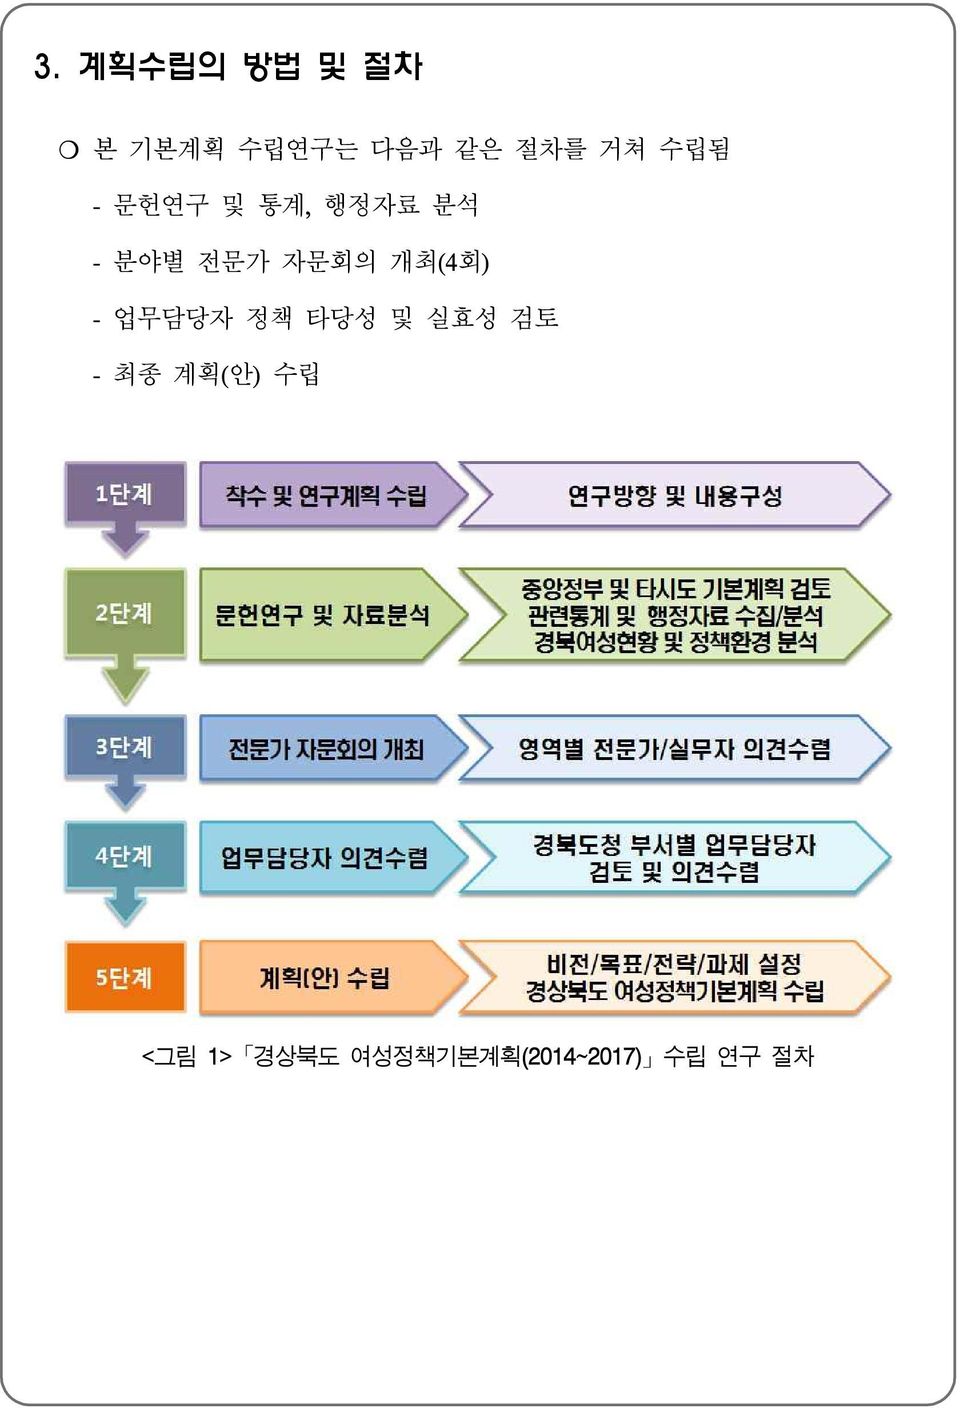 개최(4회) - 업무담당자 정책 타당성 및 실효성 검토 - 최종 계획(안)